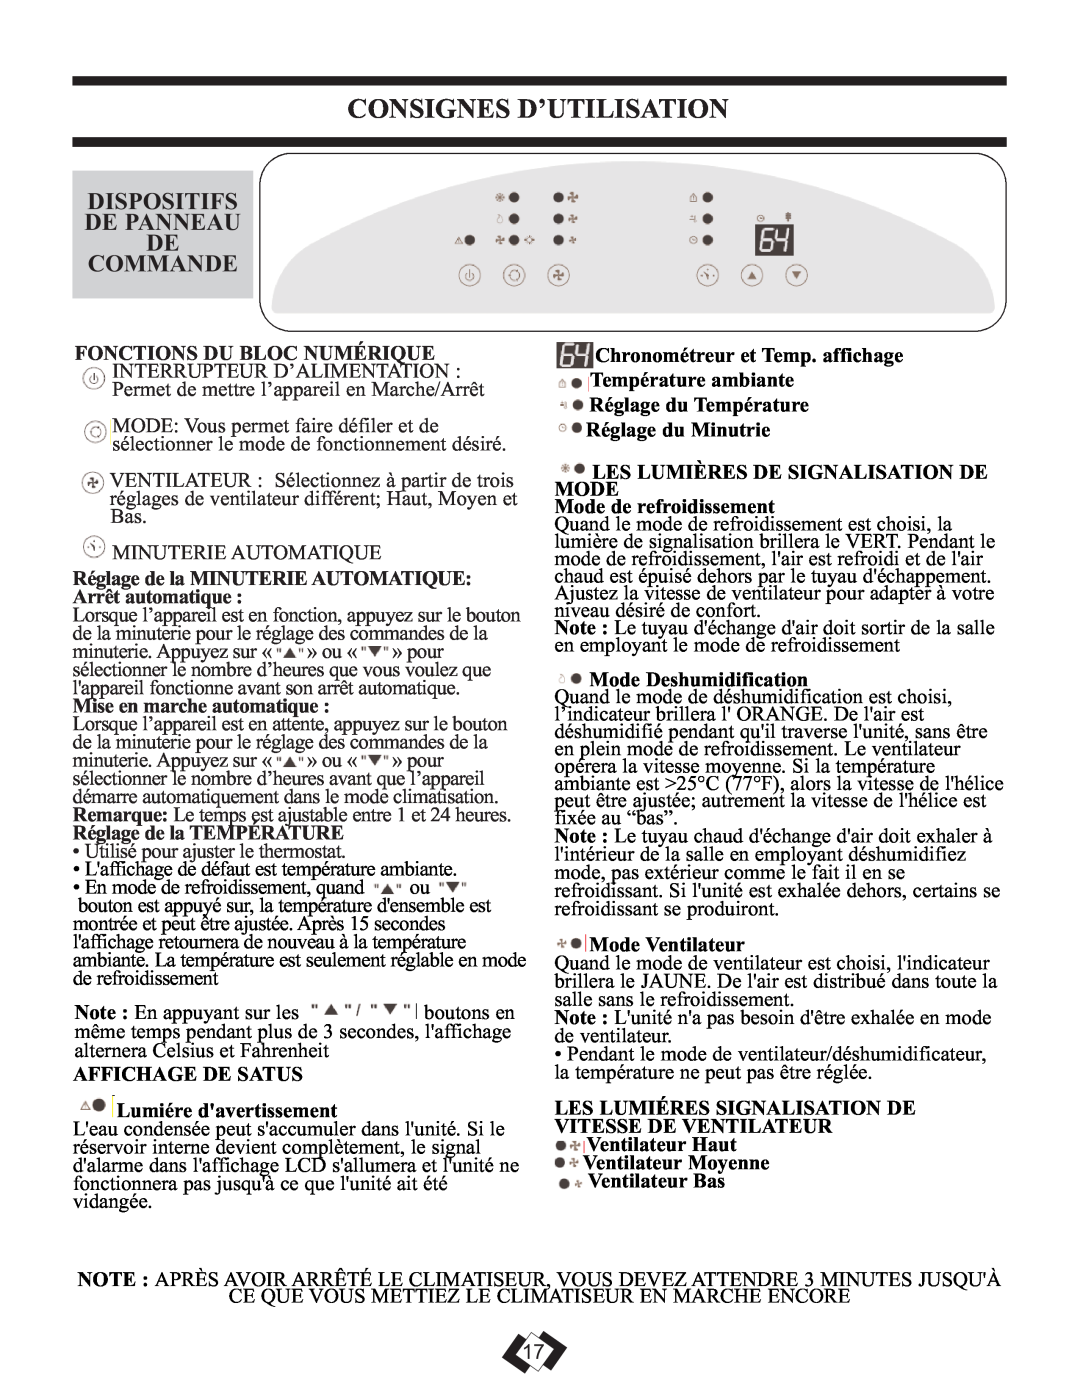 Danby DPAC 12099 manual Dispositifs De Panneau De Commande, Consignes D’Utilisation, Mise en marche automatique 